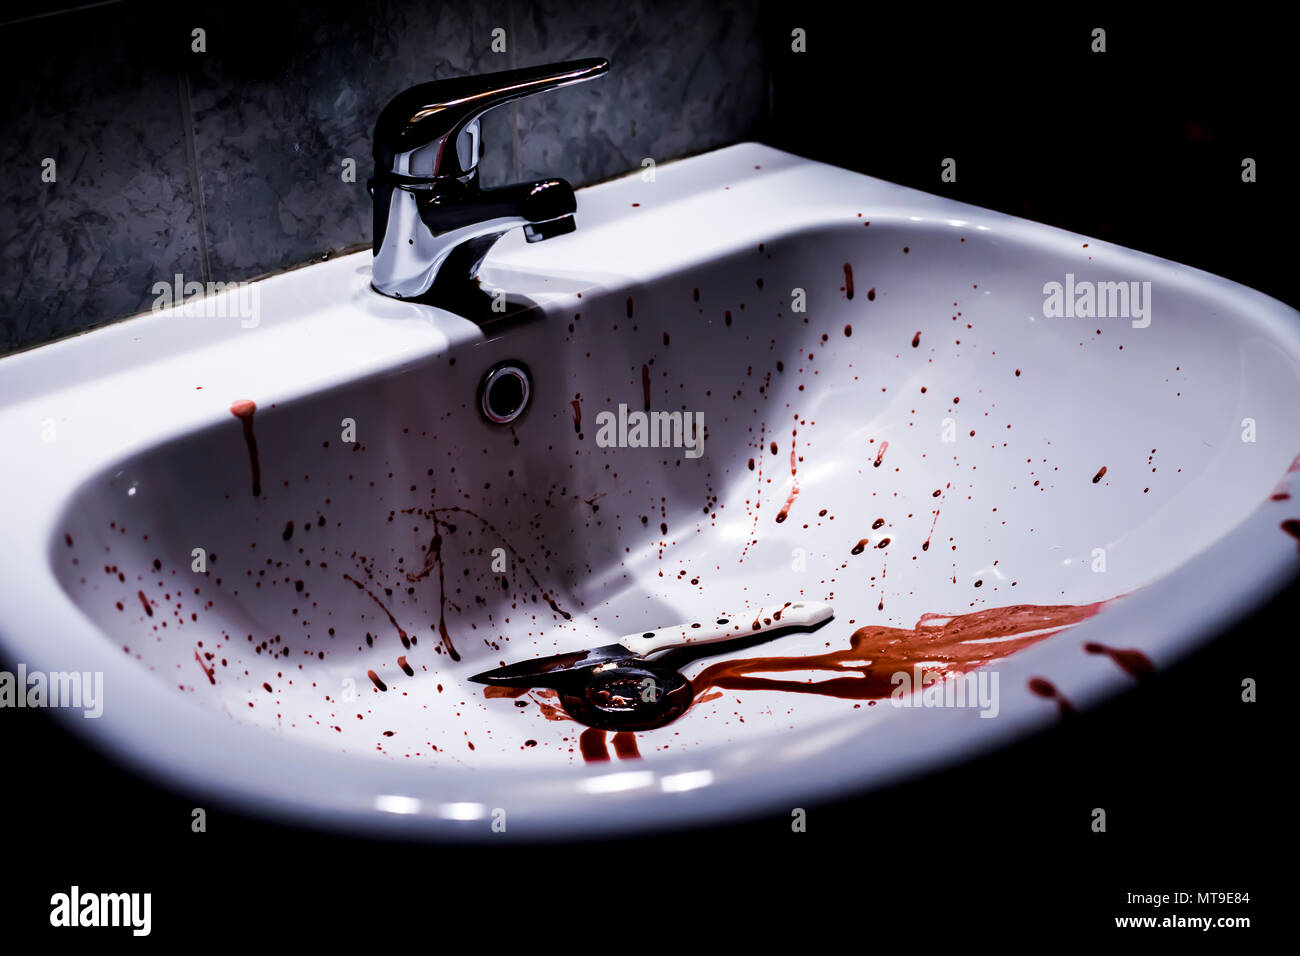 Concept du suicide - purge de mains et le couteau dans un évier Banque D'Images